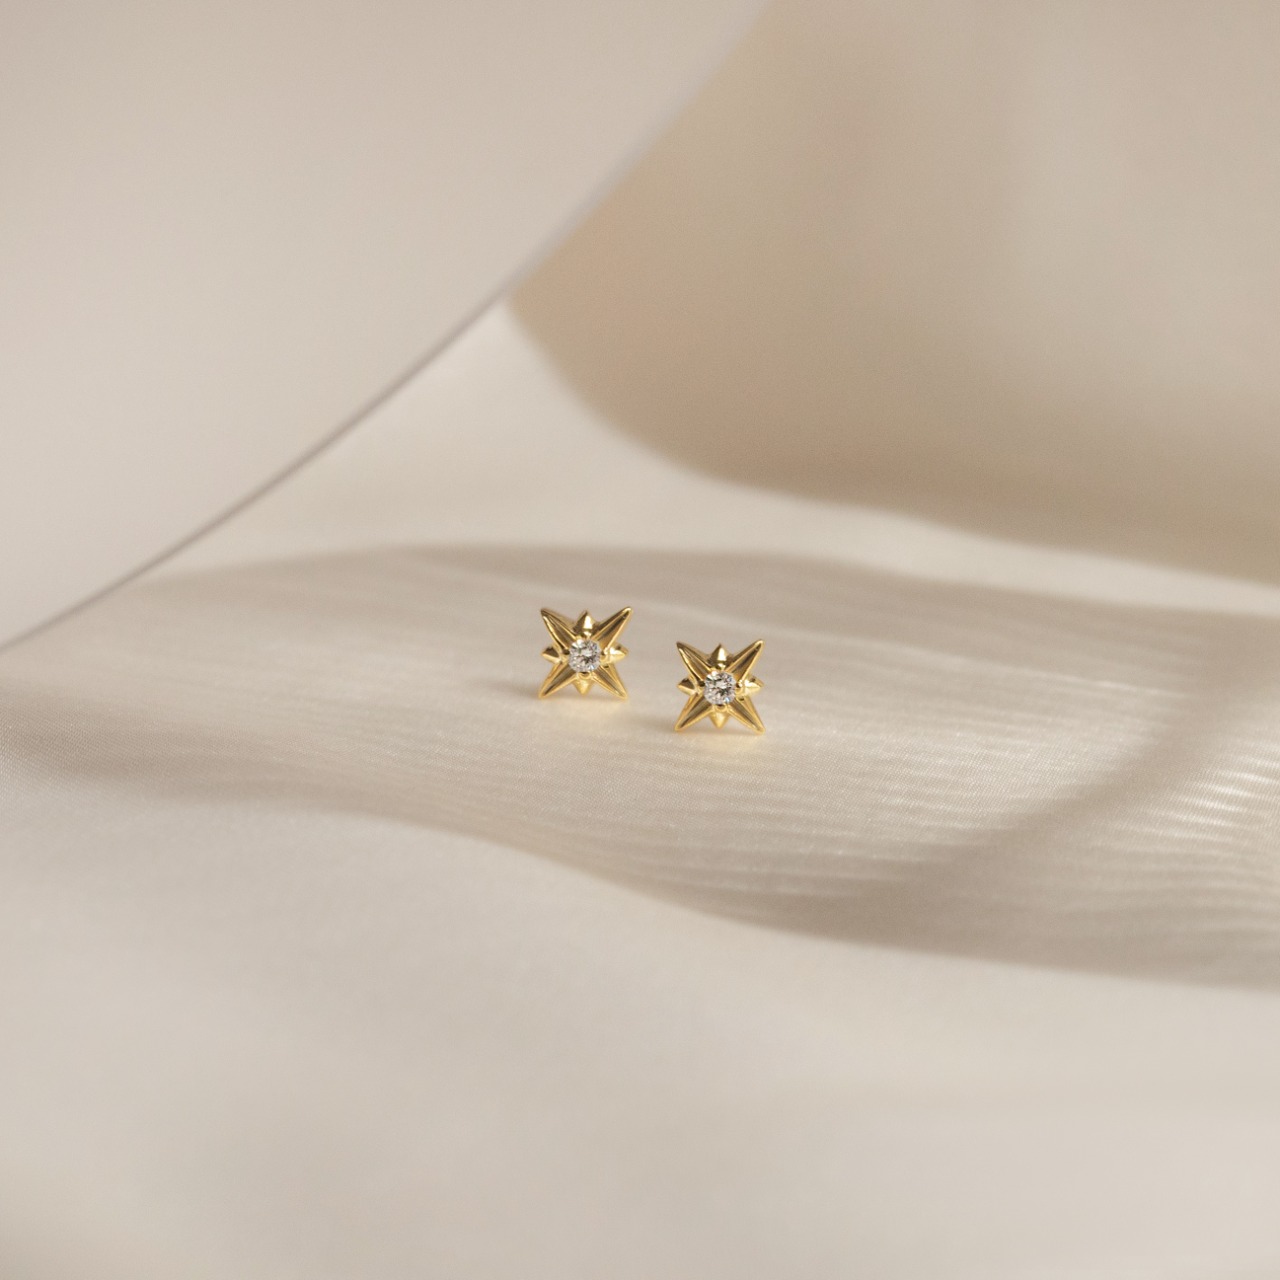 3 Koleksi Perhiasan Emas Lumine Terinspirasi dari Tradisi 'Wish Upon a Star'